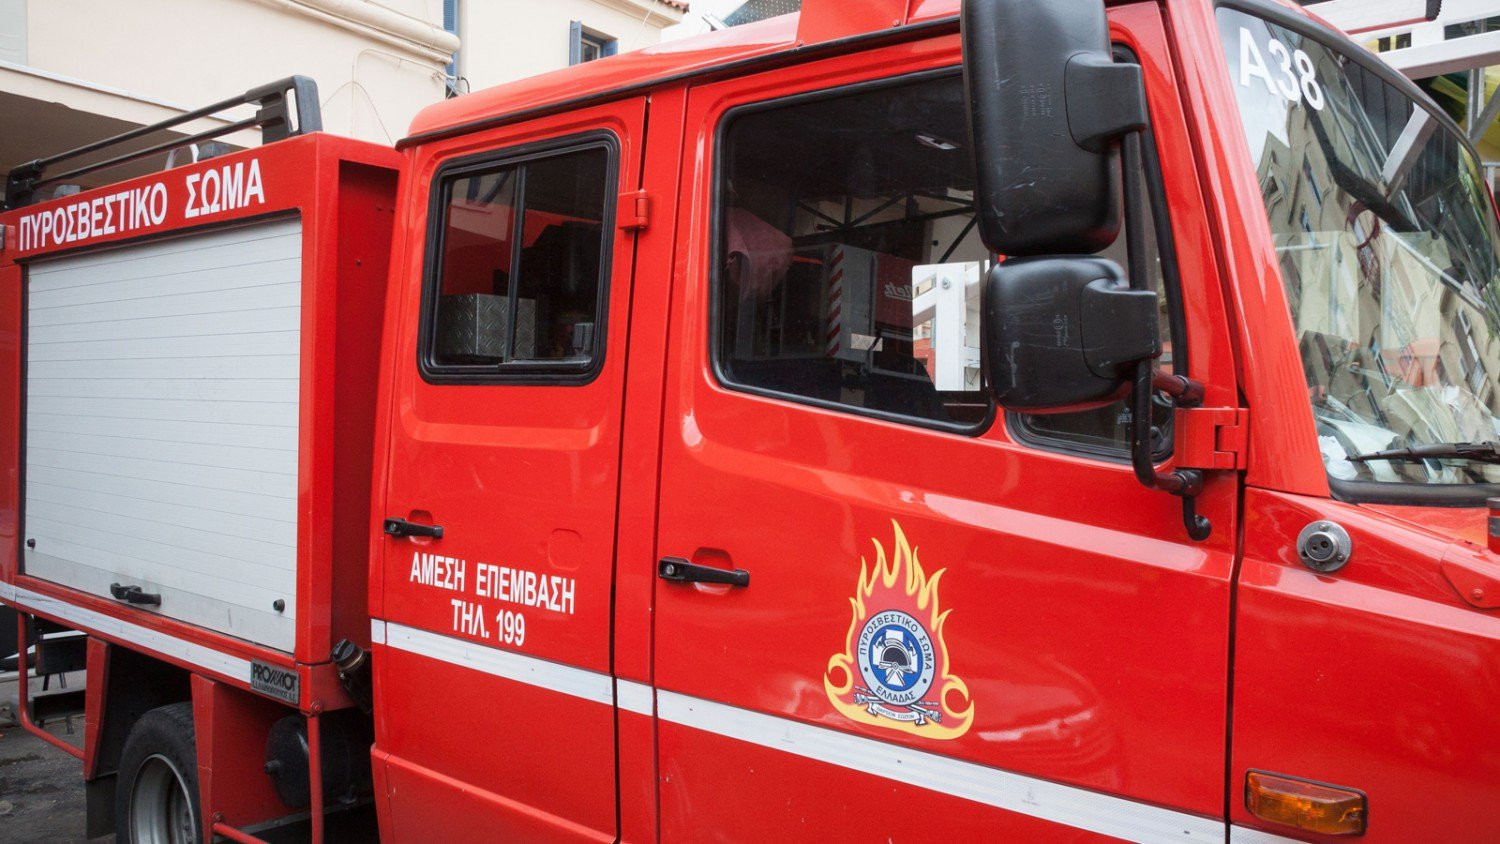 Πυρκαγιά σε διαμέρισμα στη Βούλα – Απεγκλωβίστηκαν τέσσερα άτομα – Μια νεκρή (βίντεο)